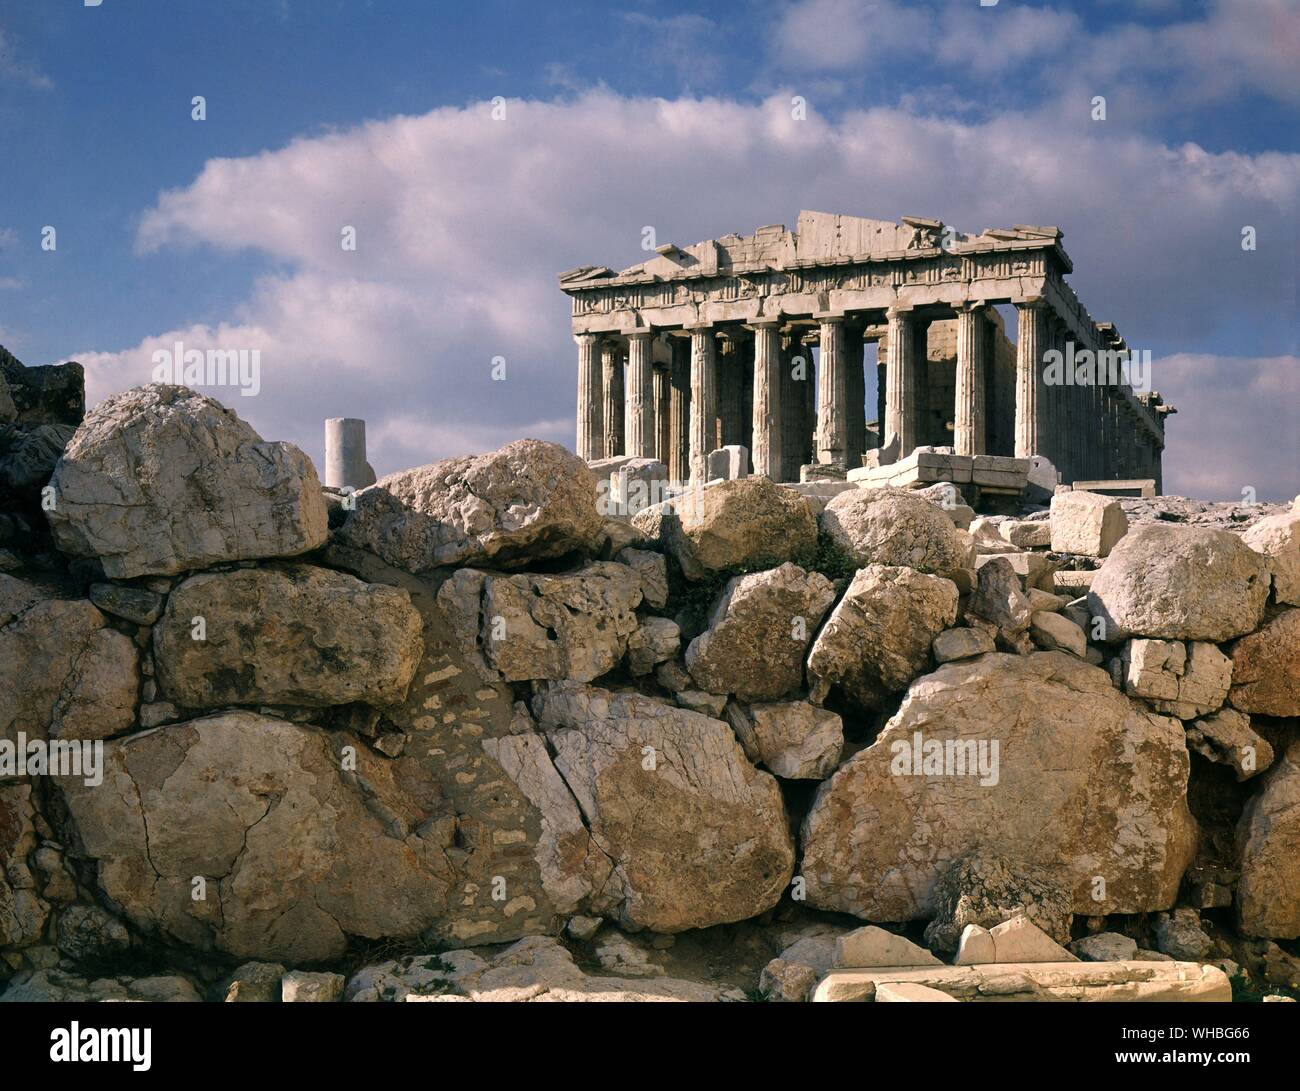 Der Parthenon - ein Tempel für die Göttin Athena im 5. Jahrhundert v. Chr. auf der Akropolis von Athen gebaut.. Stockfoto